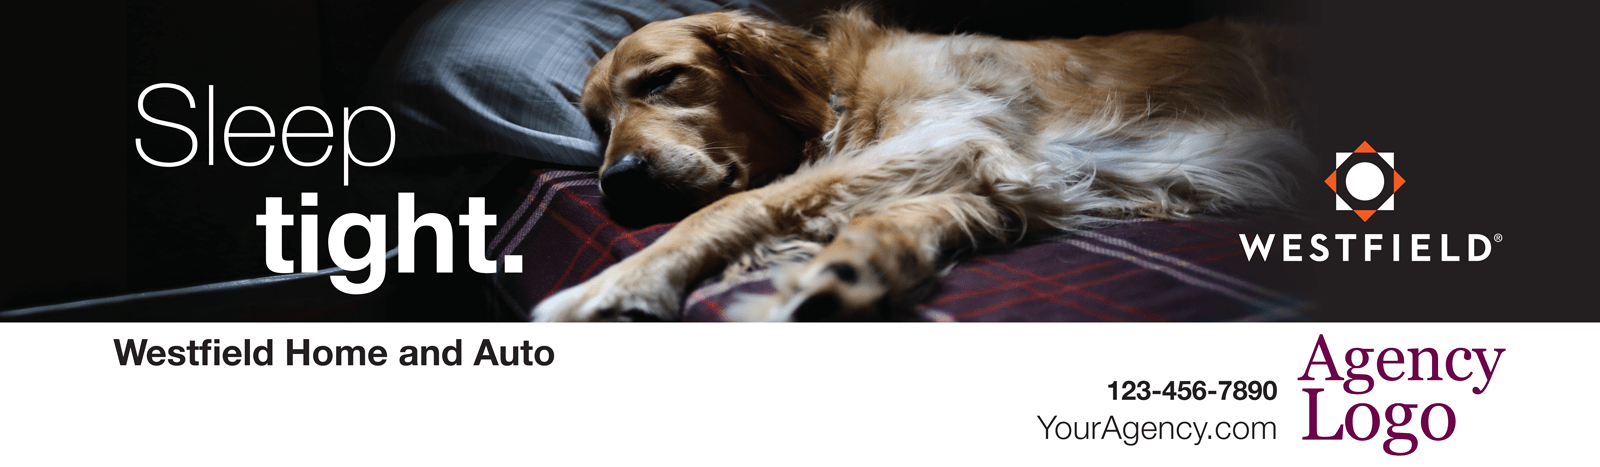 Dog asleep on a bed Westfield Personal Lines Sleep Tight Billboard Ad